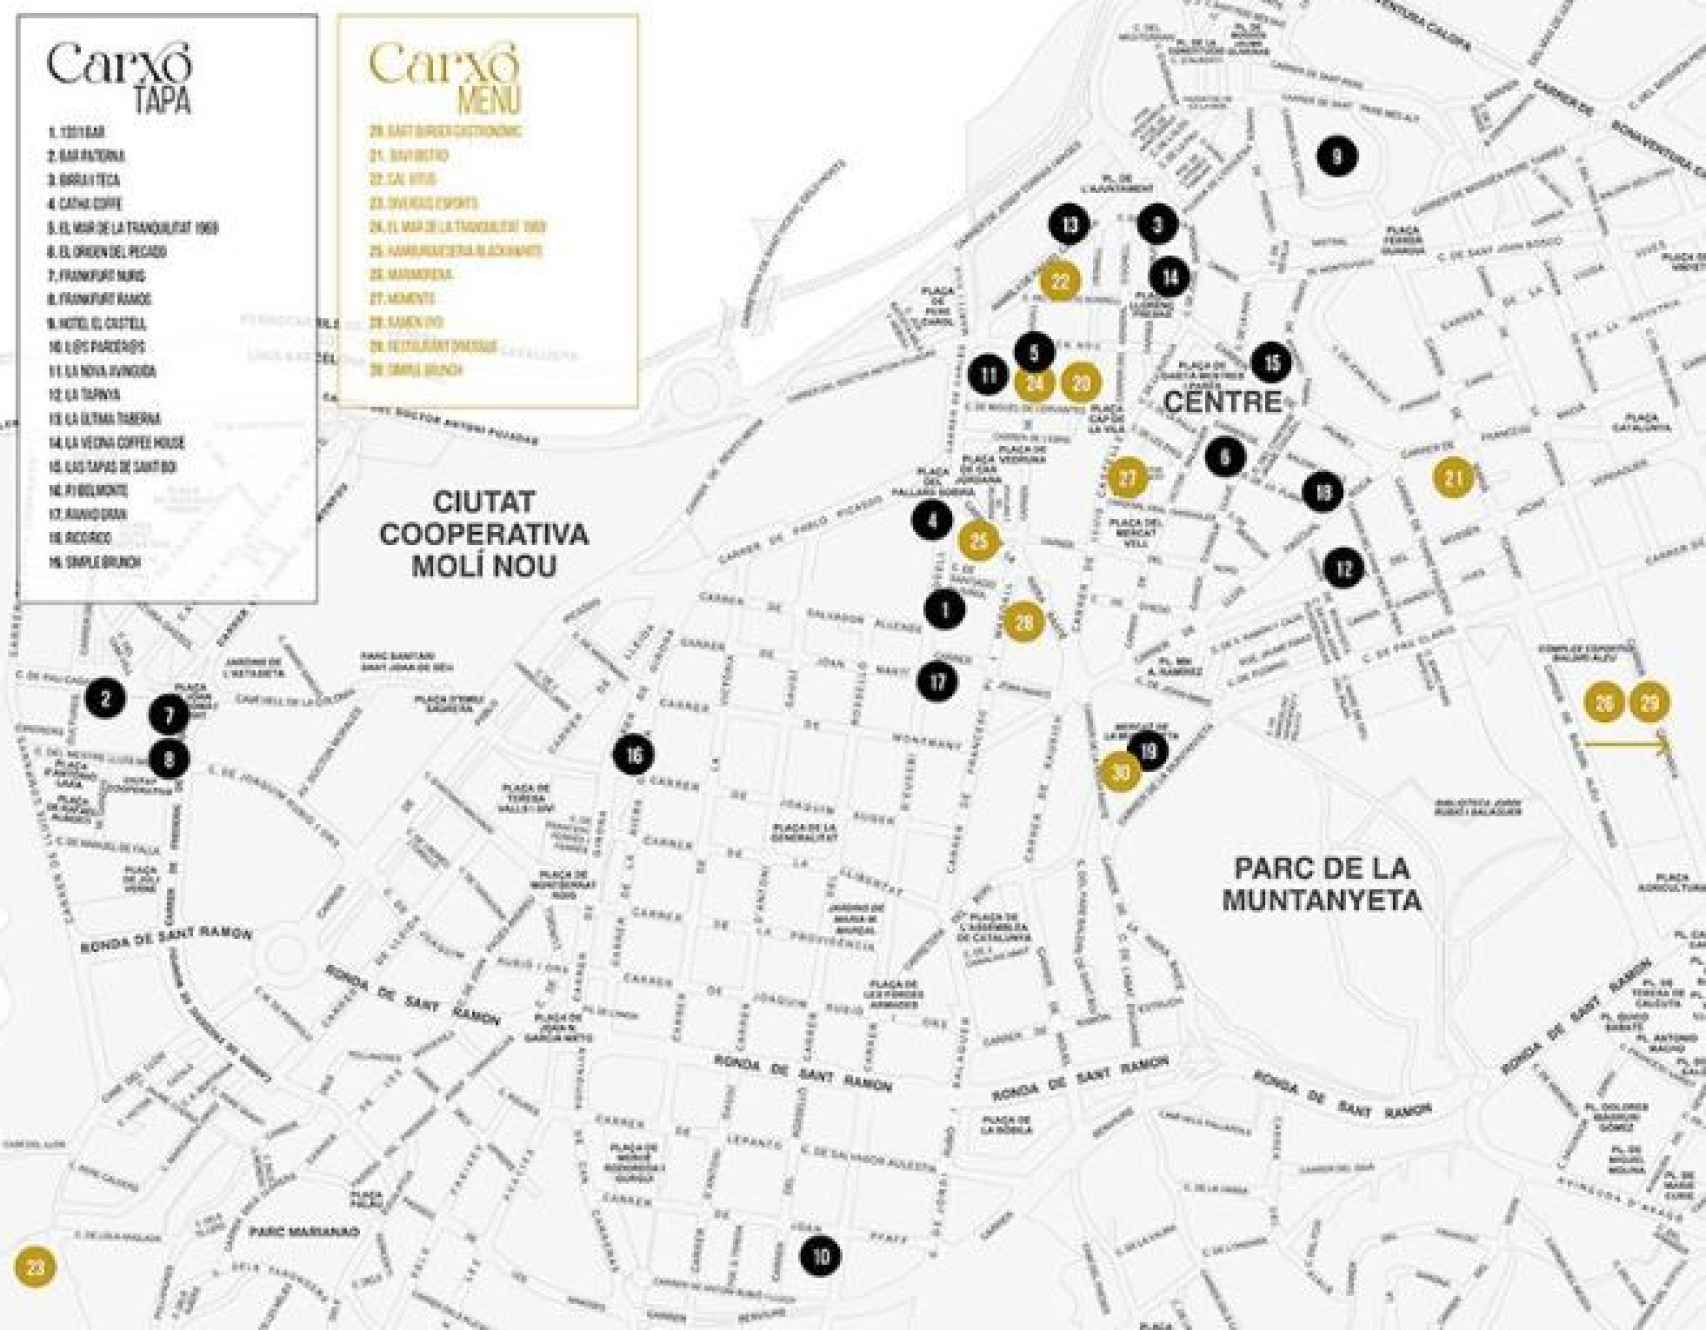 Mapa de los bares que participan en la ruta